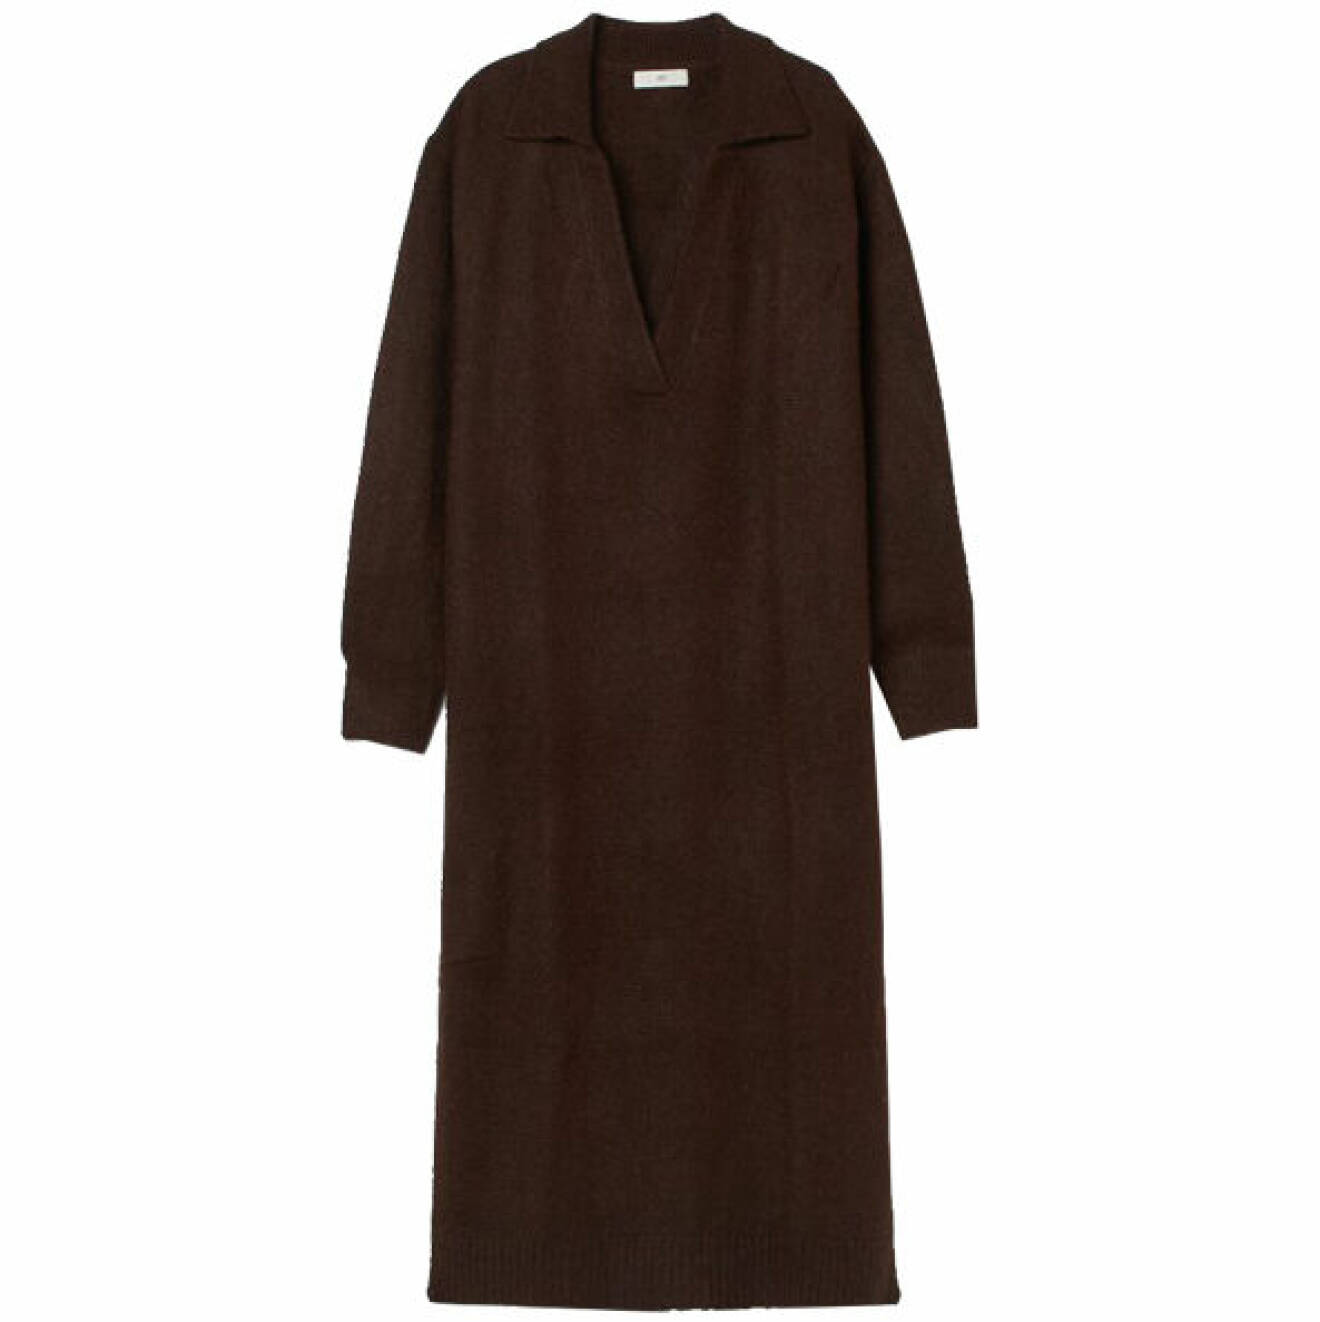 bästa köpen i oktober - mörkbrun stickad klänning med krage